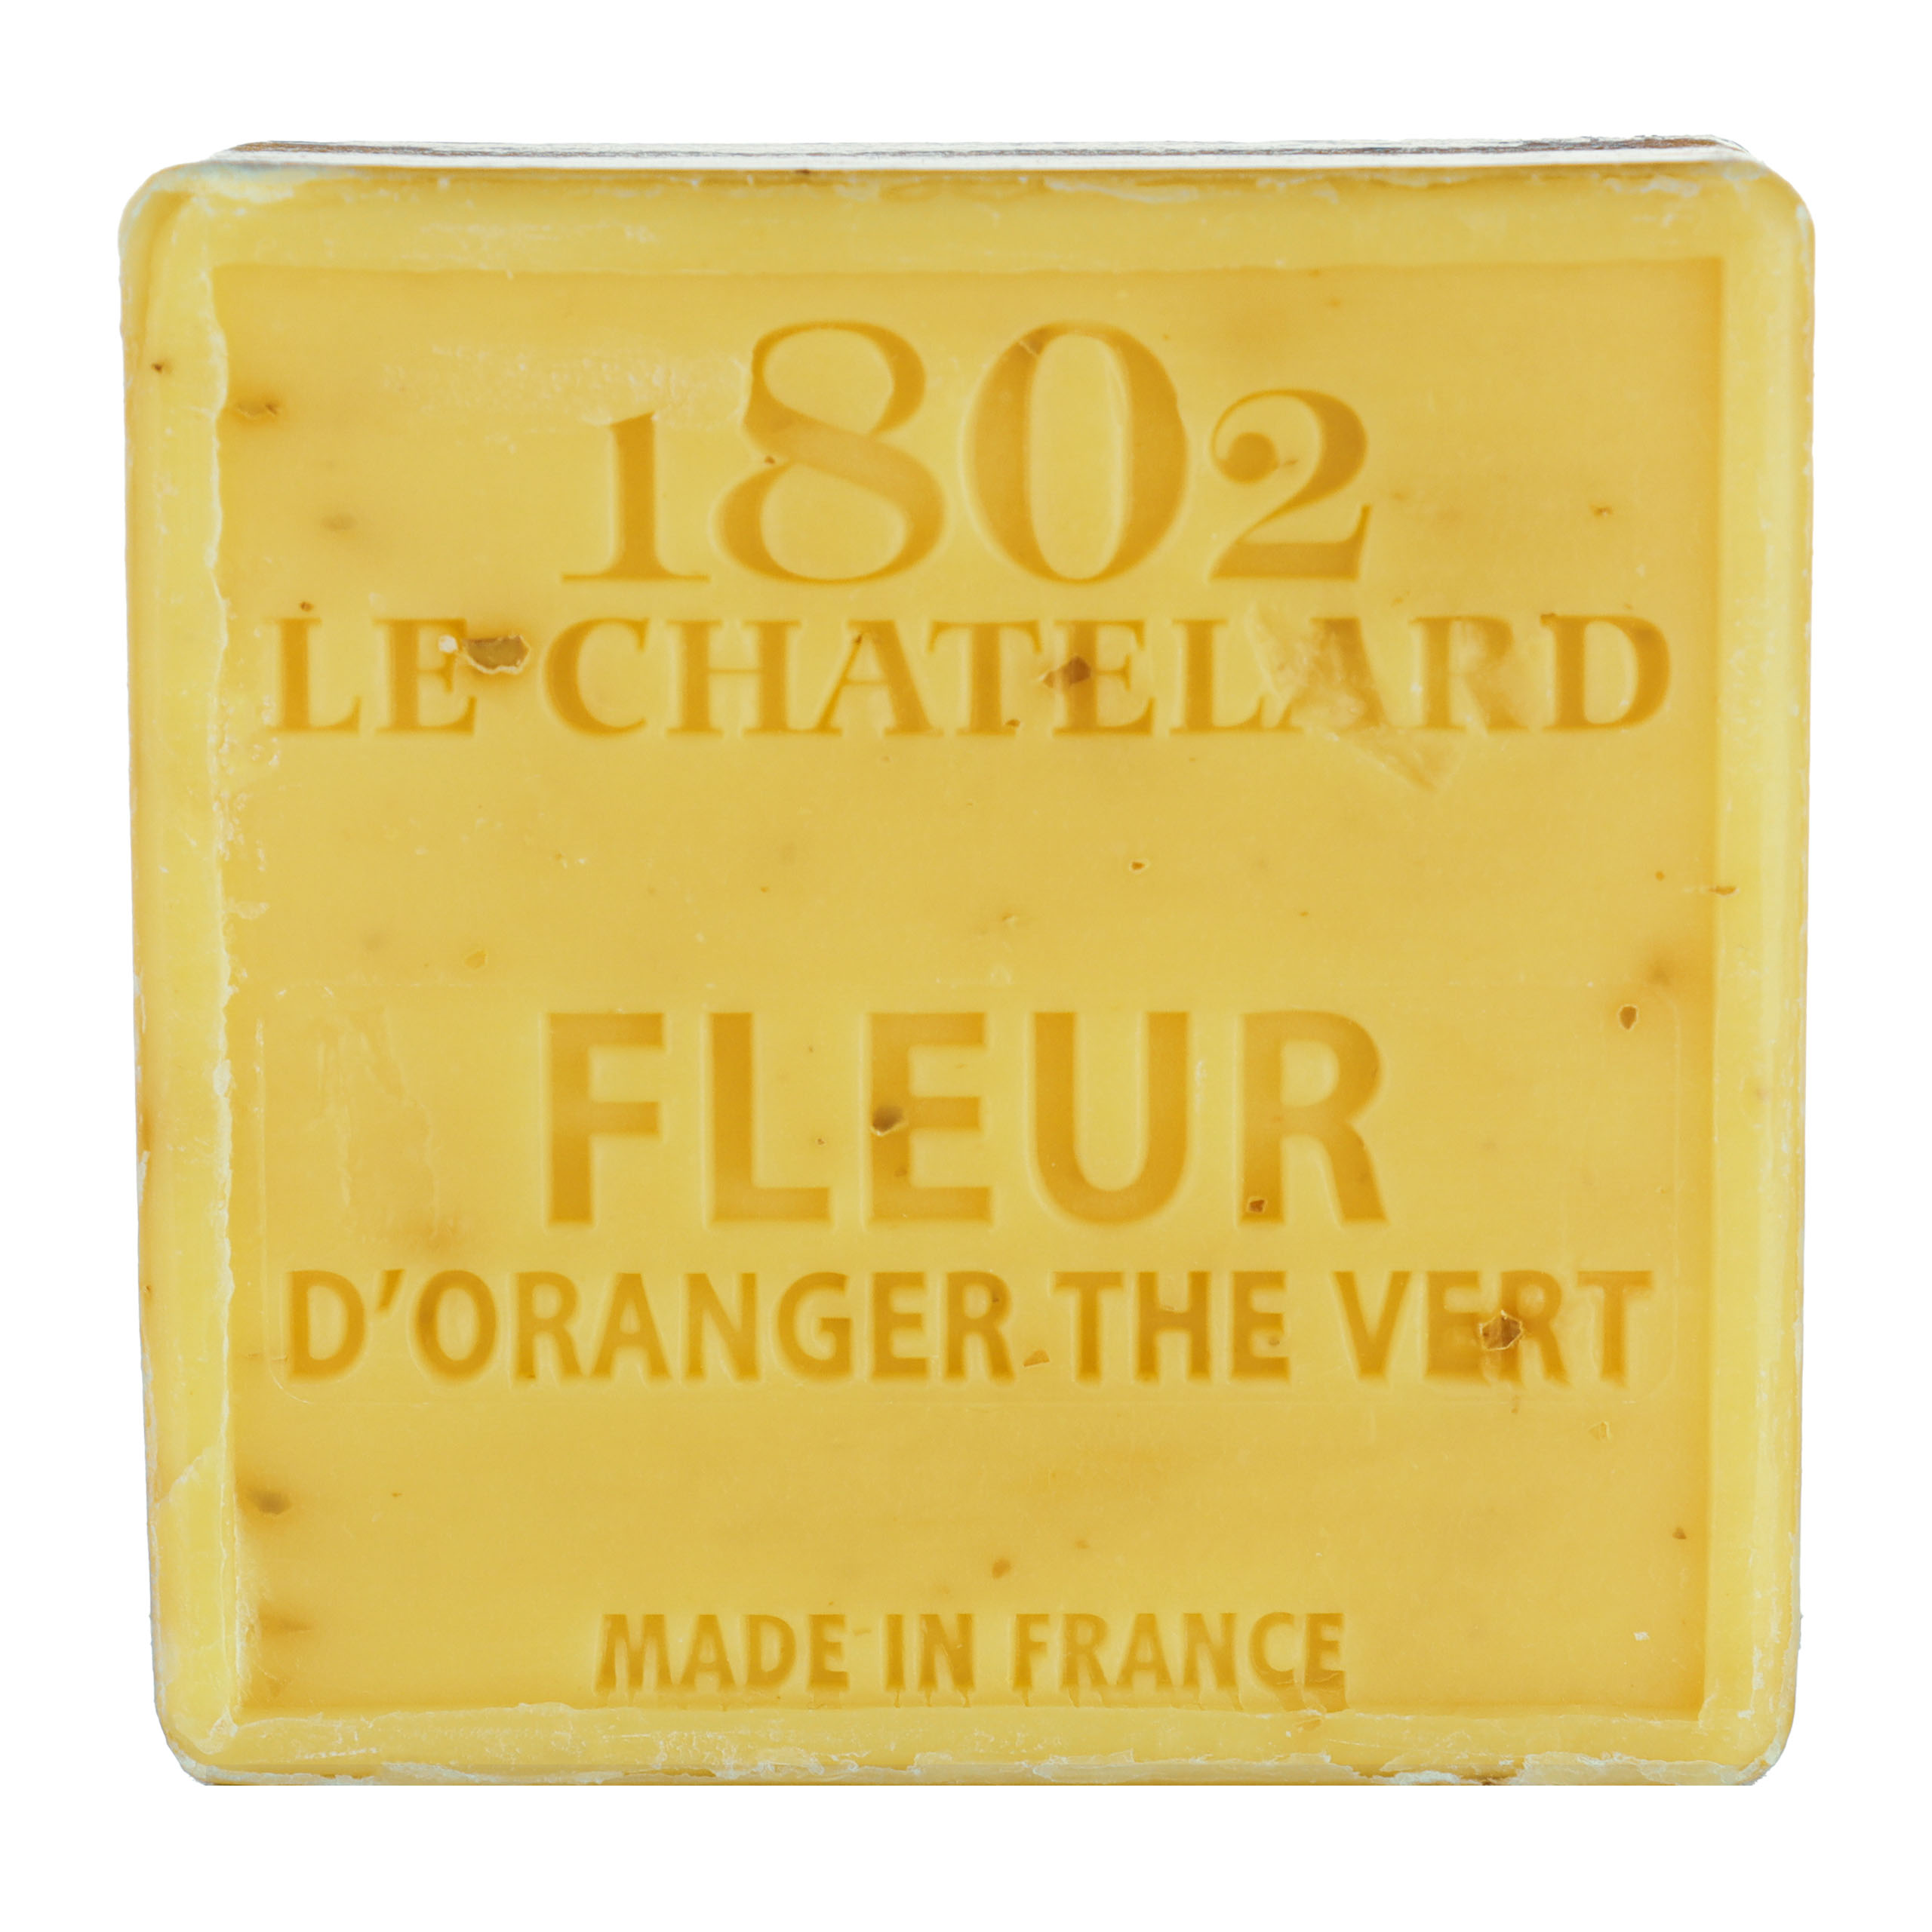 Mydło marsylskie Kwiat Pomarańczy Zielona Herbata Bez Oleju Palmowego 100g Le Chatelard 1802